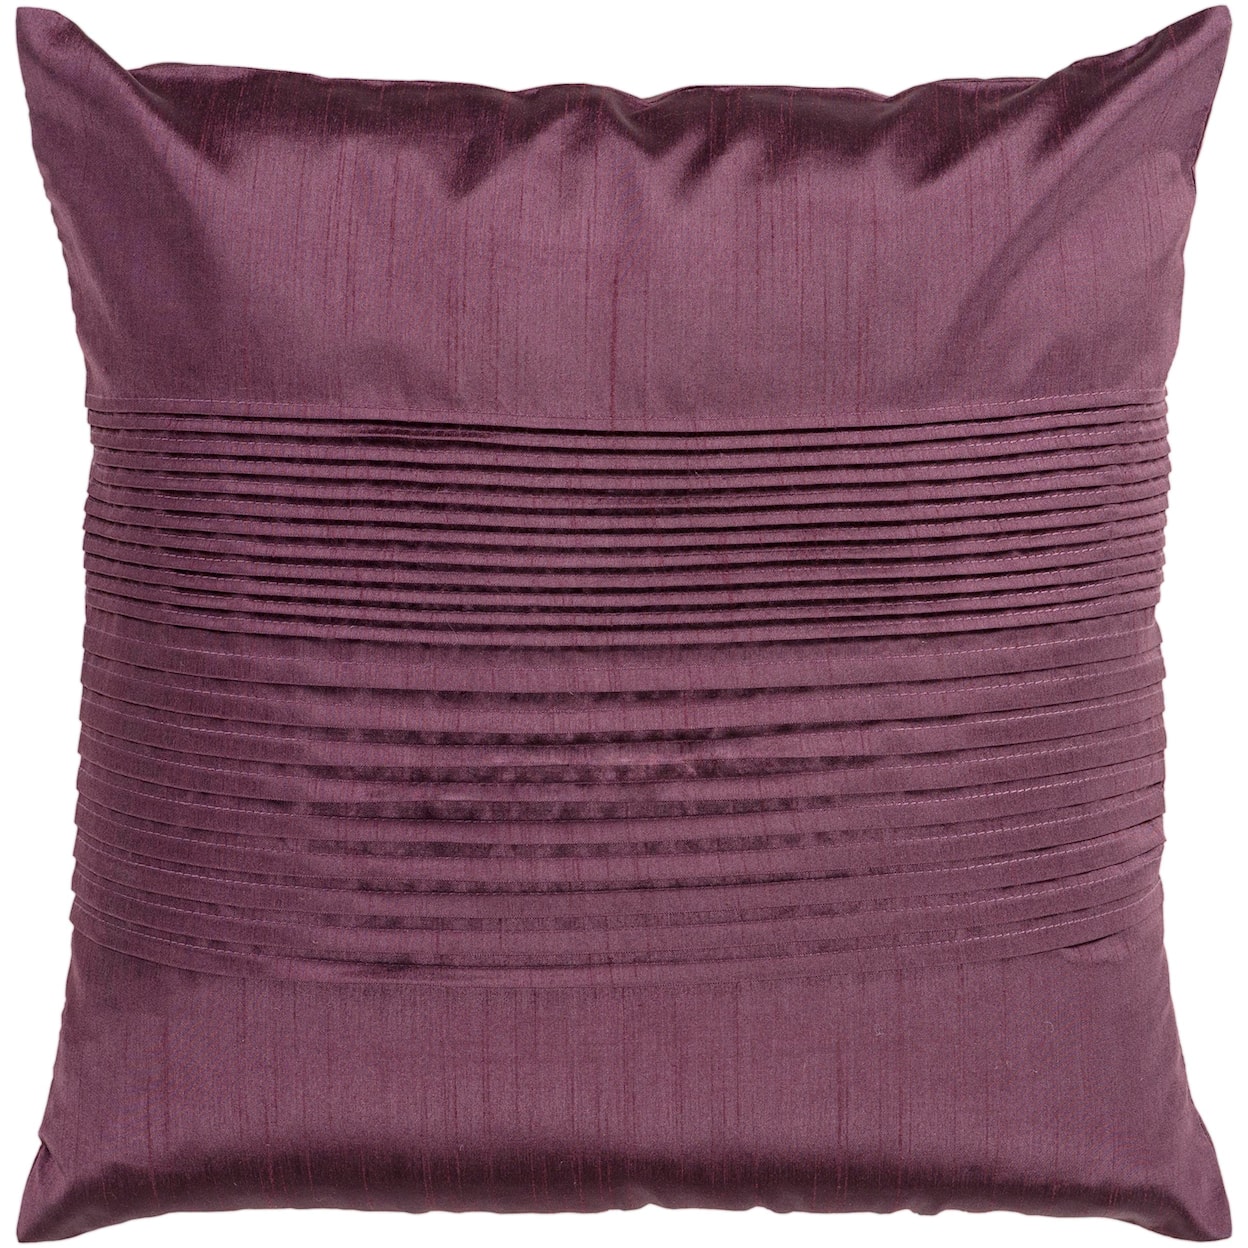 Surya Pillows 18" x 18" Pillow